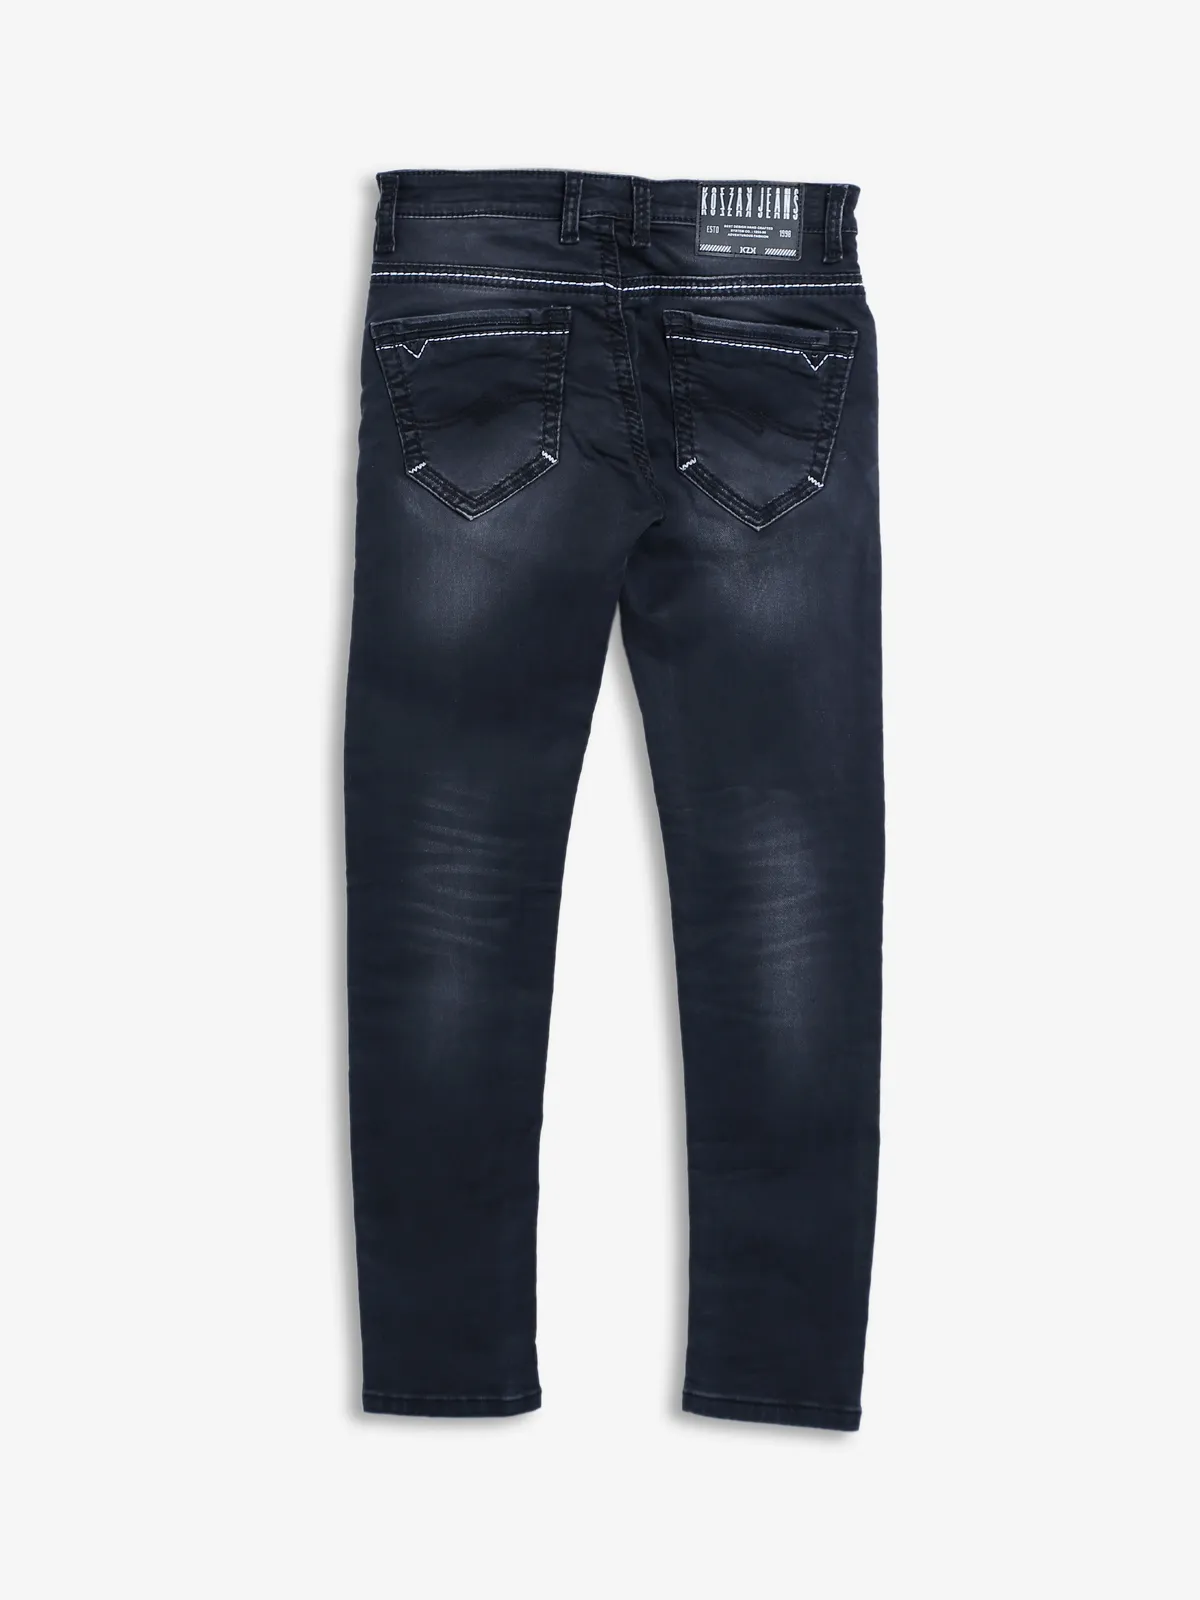 Kozzak black washed super skinny fit jeans